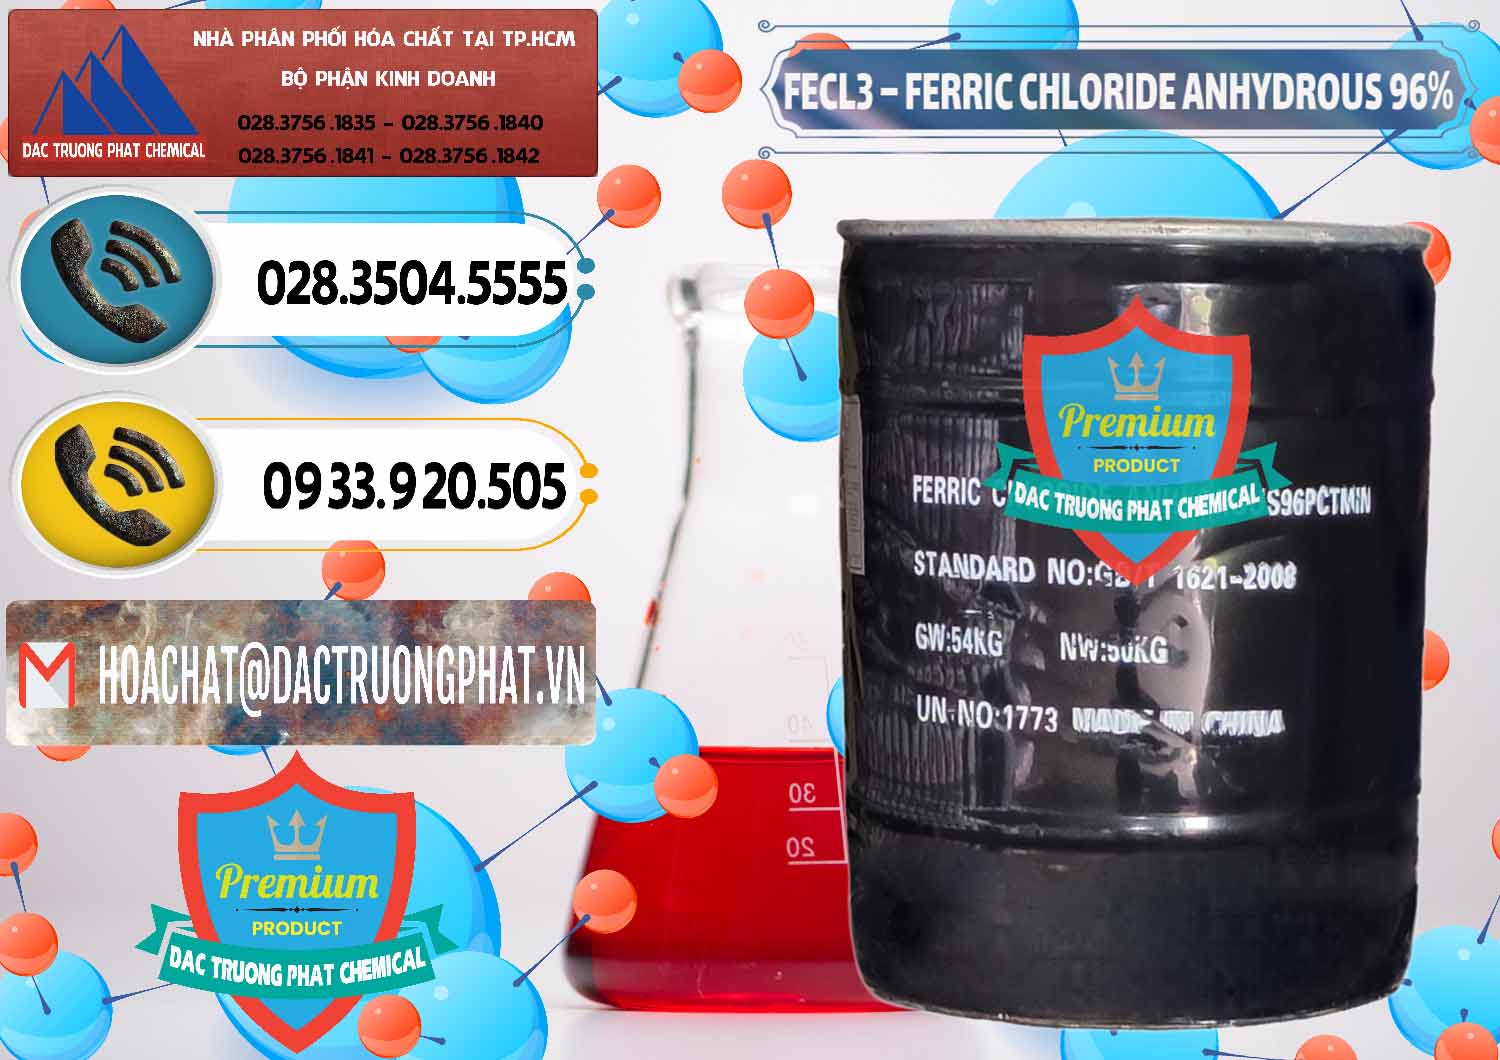 Công ty chuyên cung cấp & bán FECL3 – Ferric Chloride Anhydrous 96% Trung Quốc China - 0065 - Nơi nhập khẩu ( cung cấp ) hóa chất tại TP.HCM - hoachatdetnhuom.vn